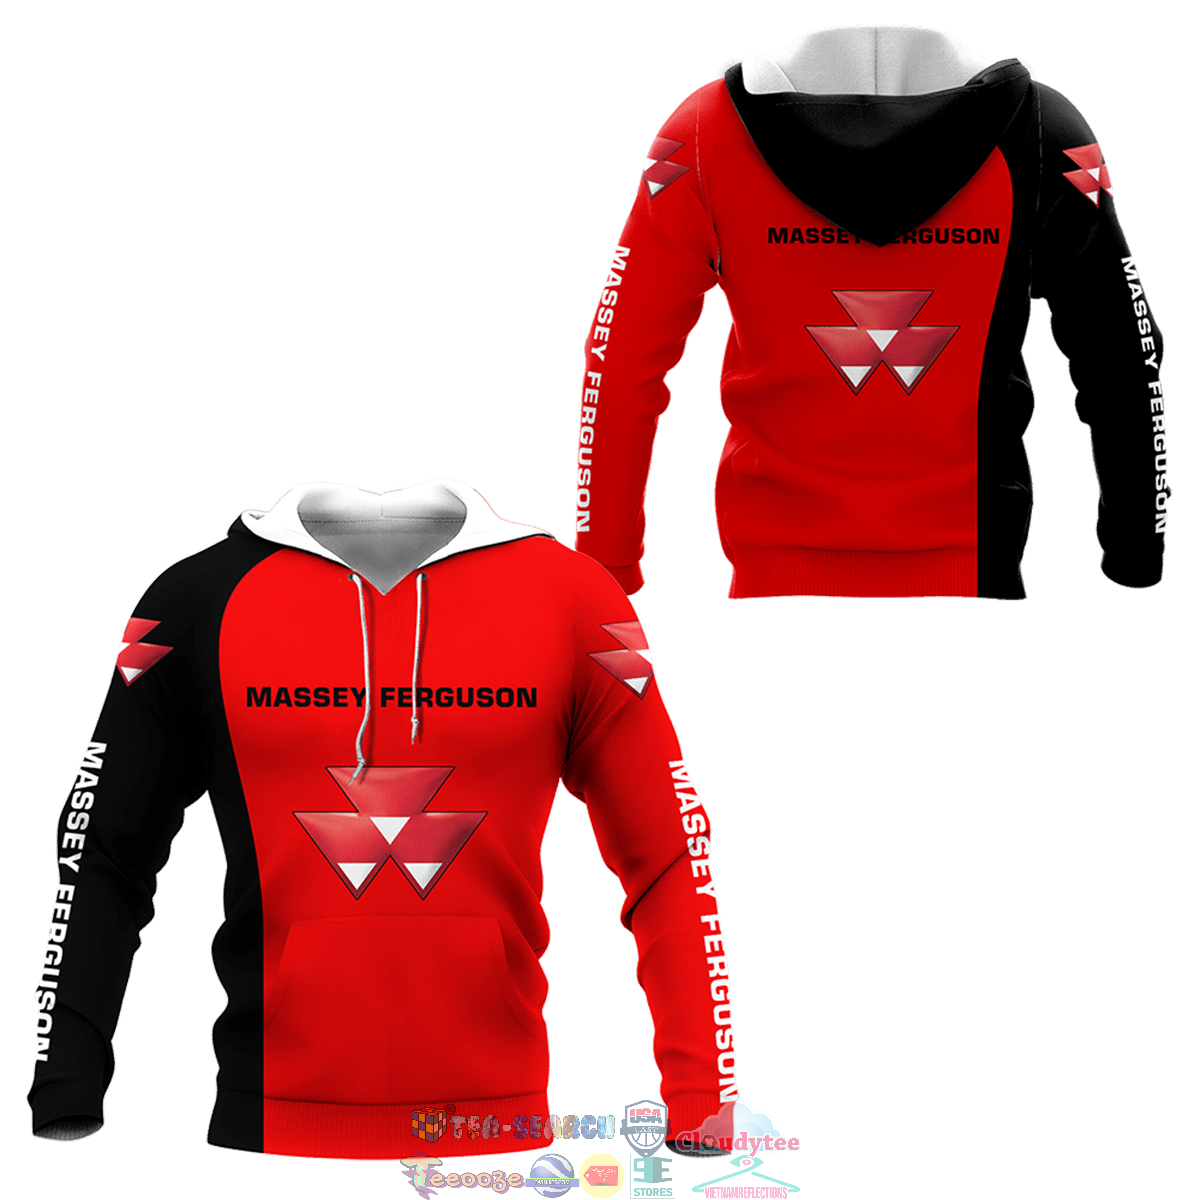 Massey Ferguson ver 3 3D hoodie and t-shirt